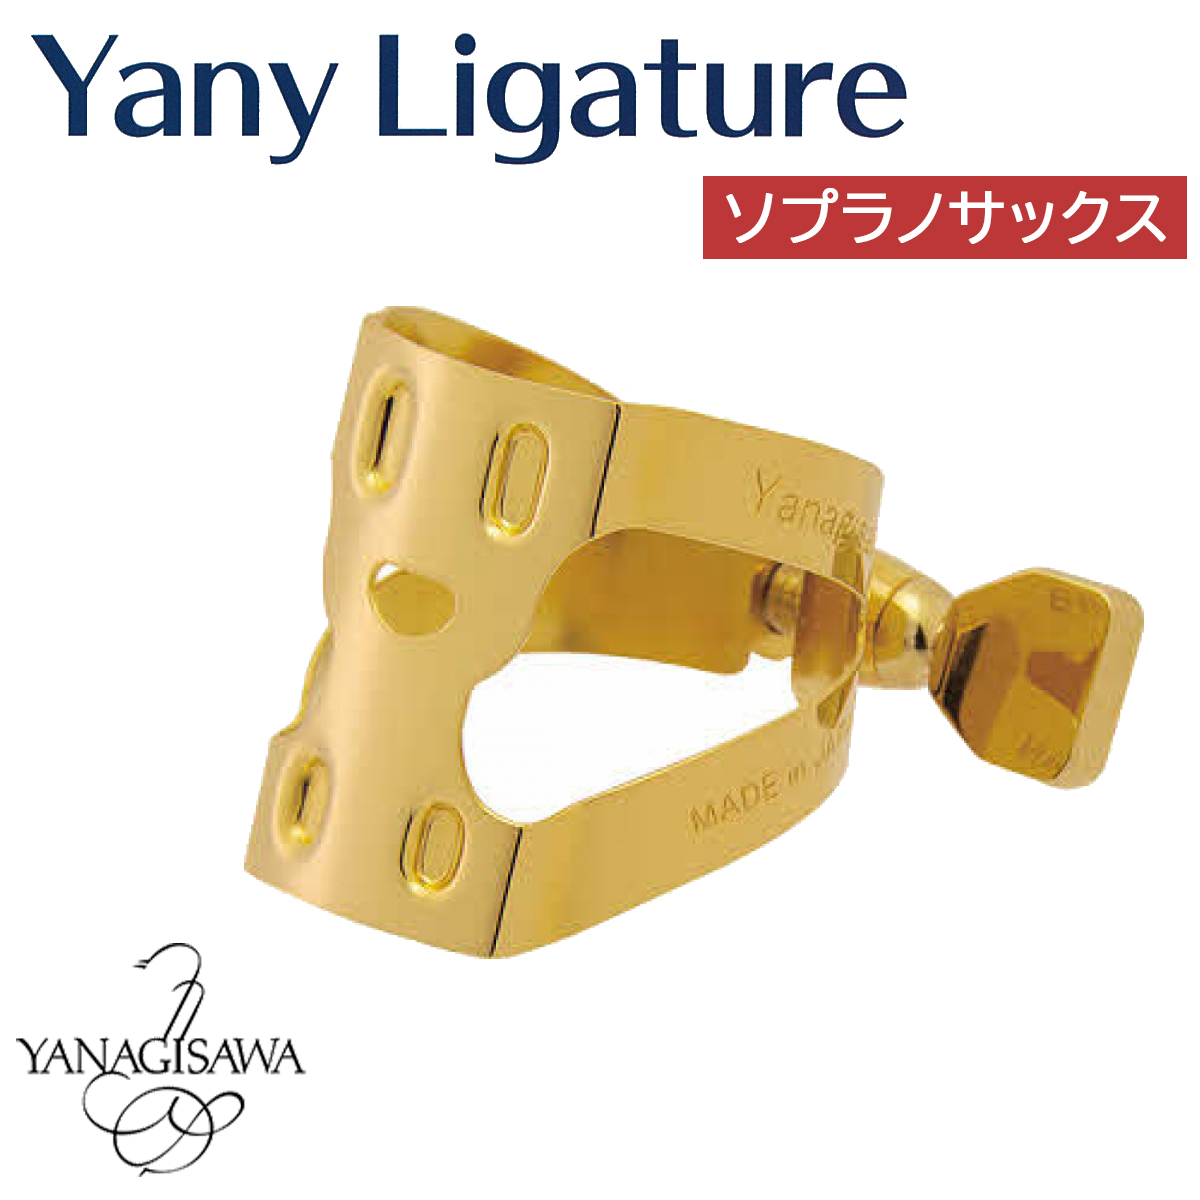 リガチャー＞【新製品】Yanagisawa(ヤナギサワ)よりYany Ligature 